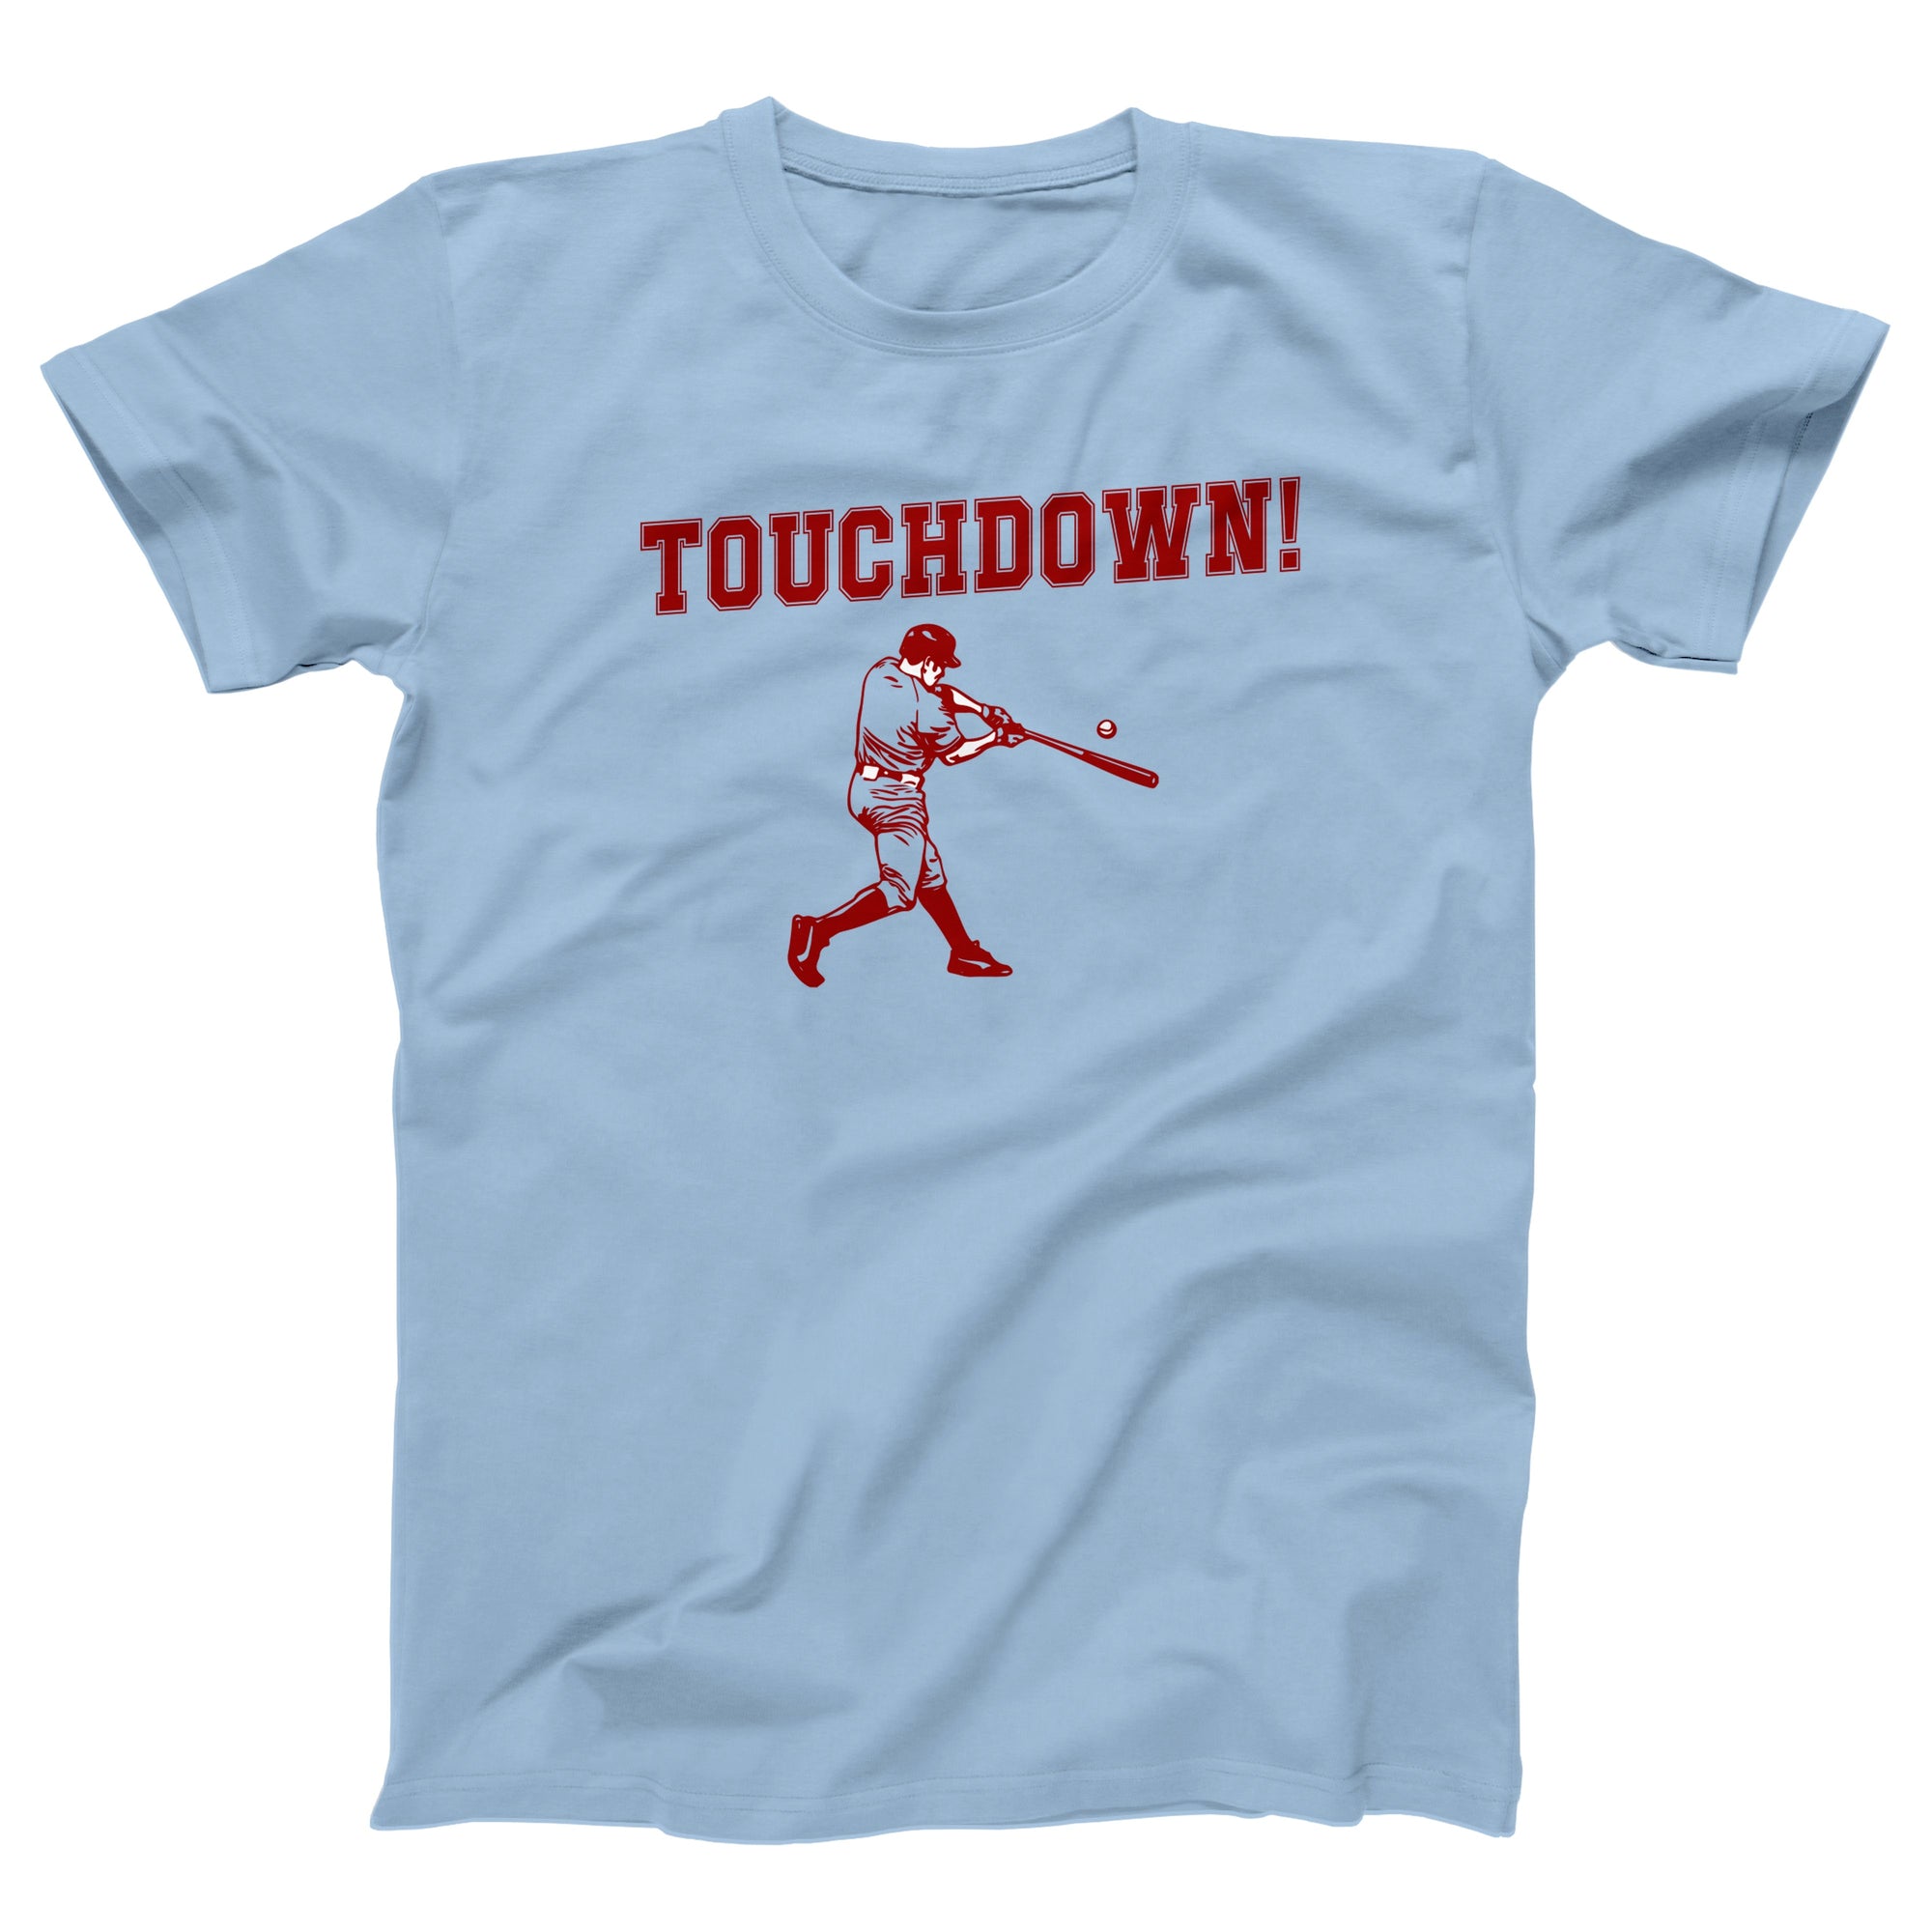 Touchdown! Adult Unisex T-Shirt - anishphilip